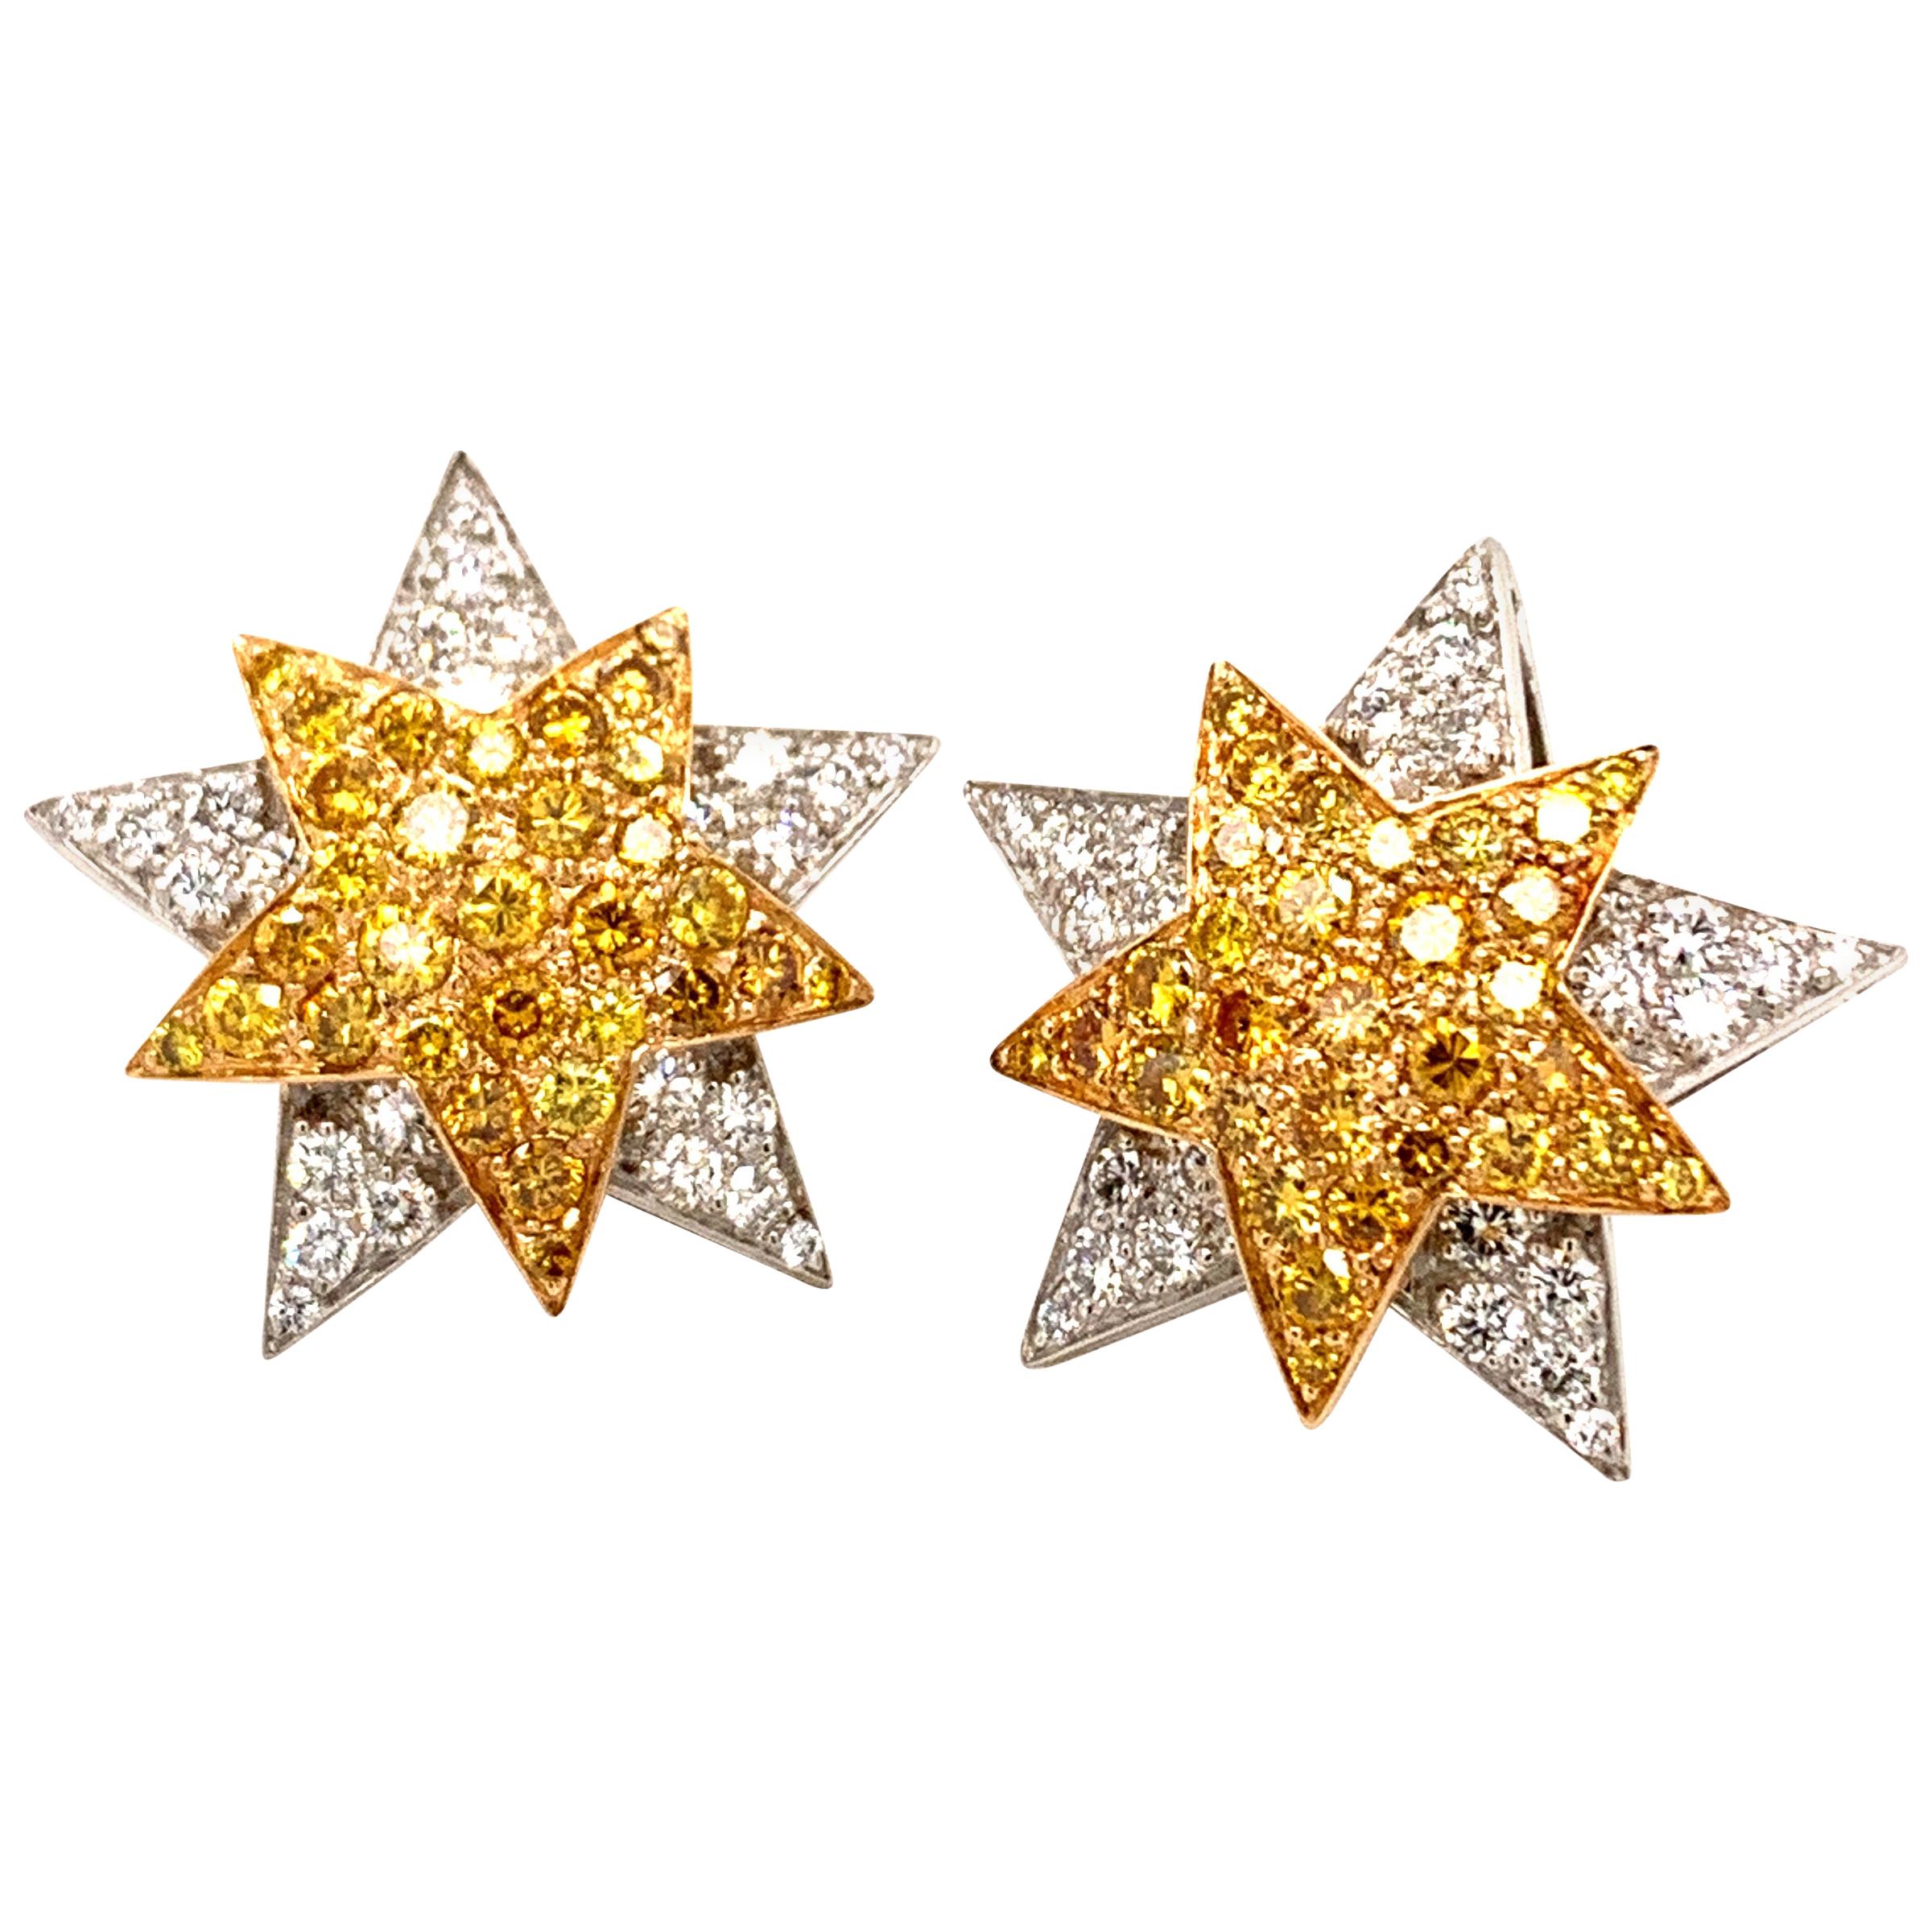  Oscar Heyman  Fancy Diamond Earrings